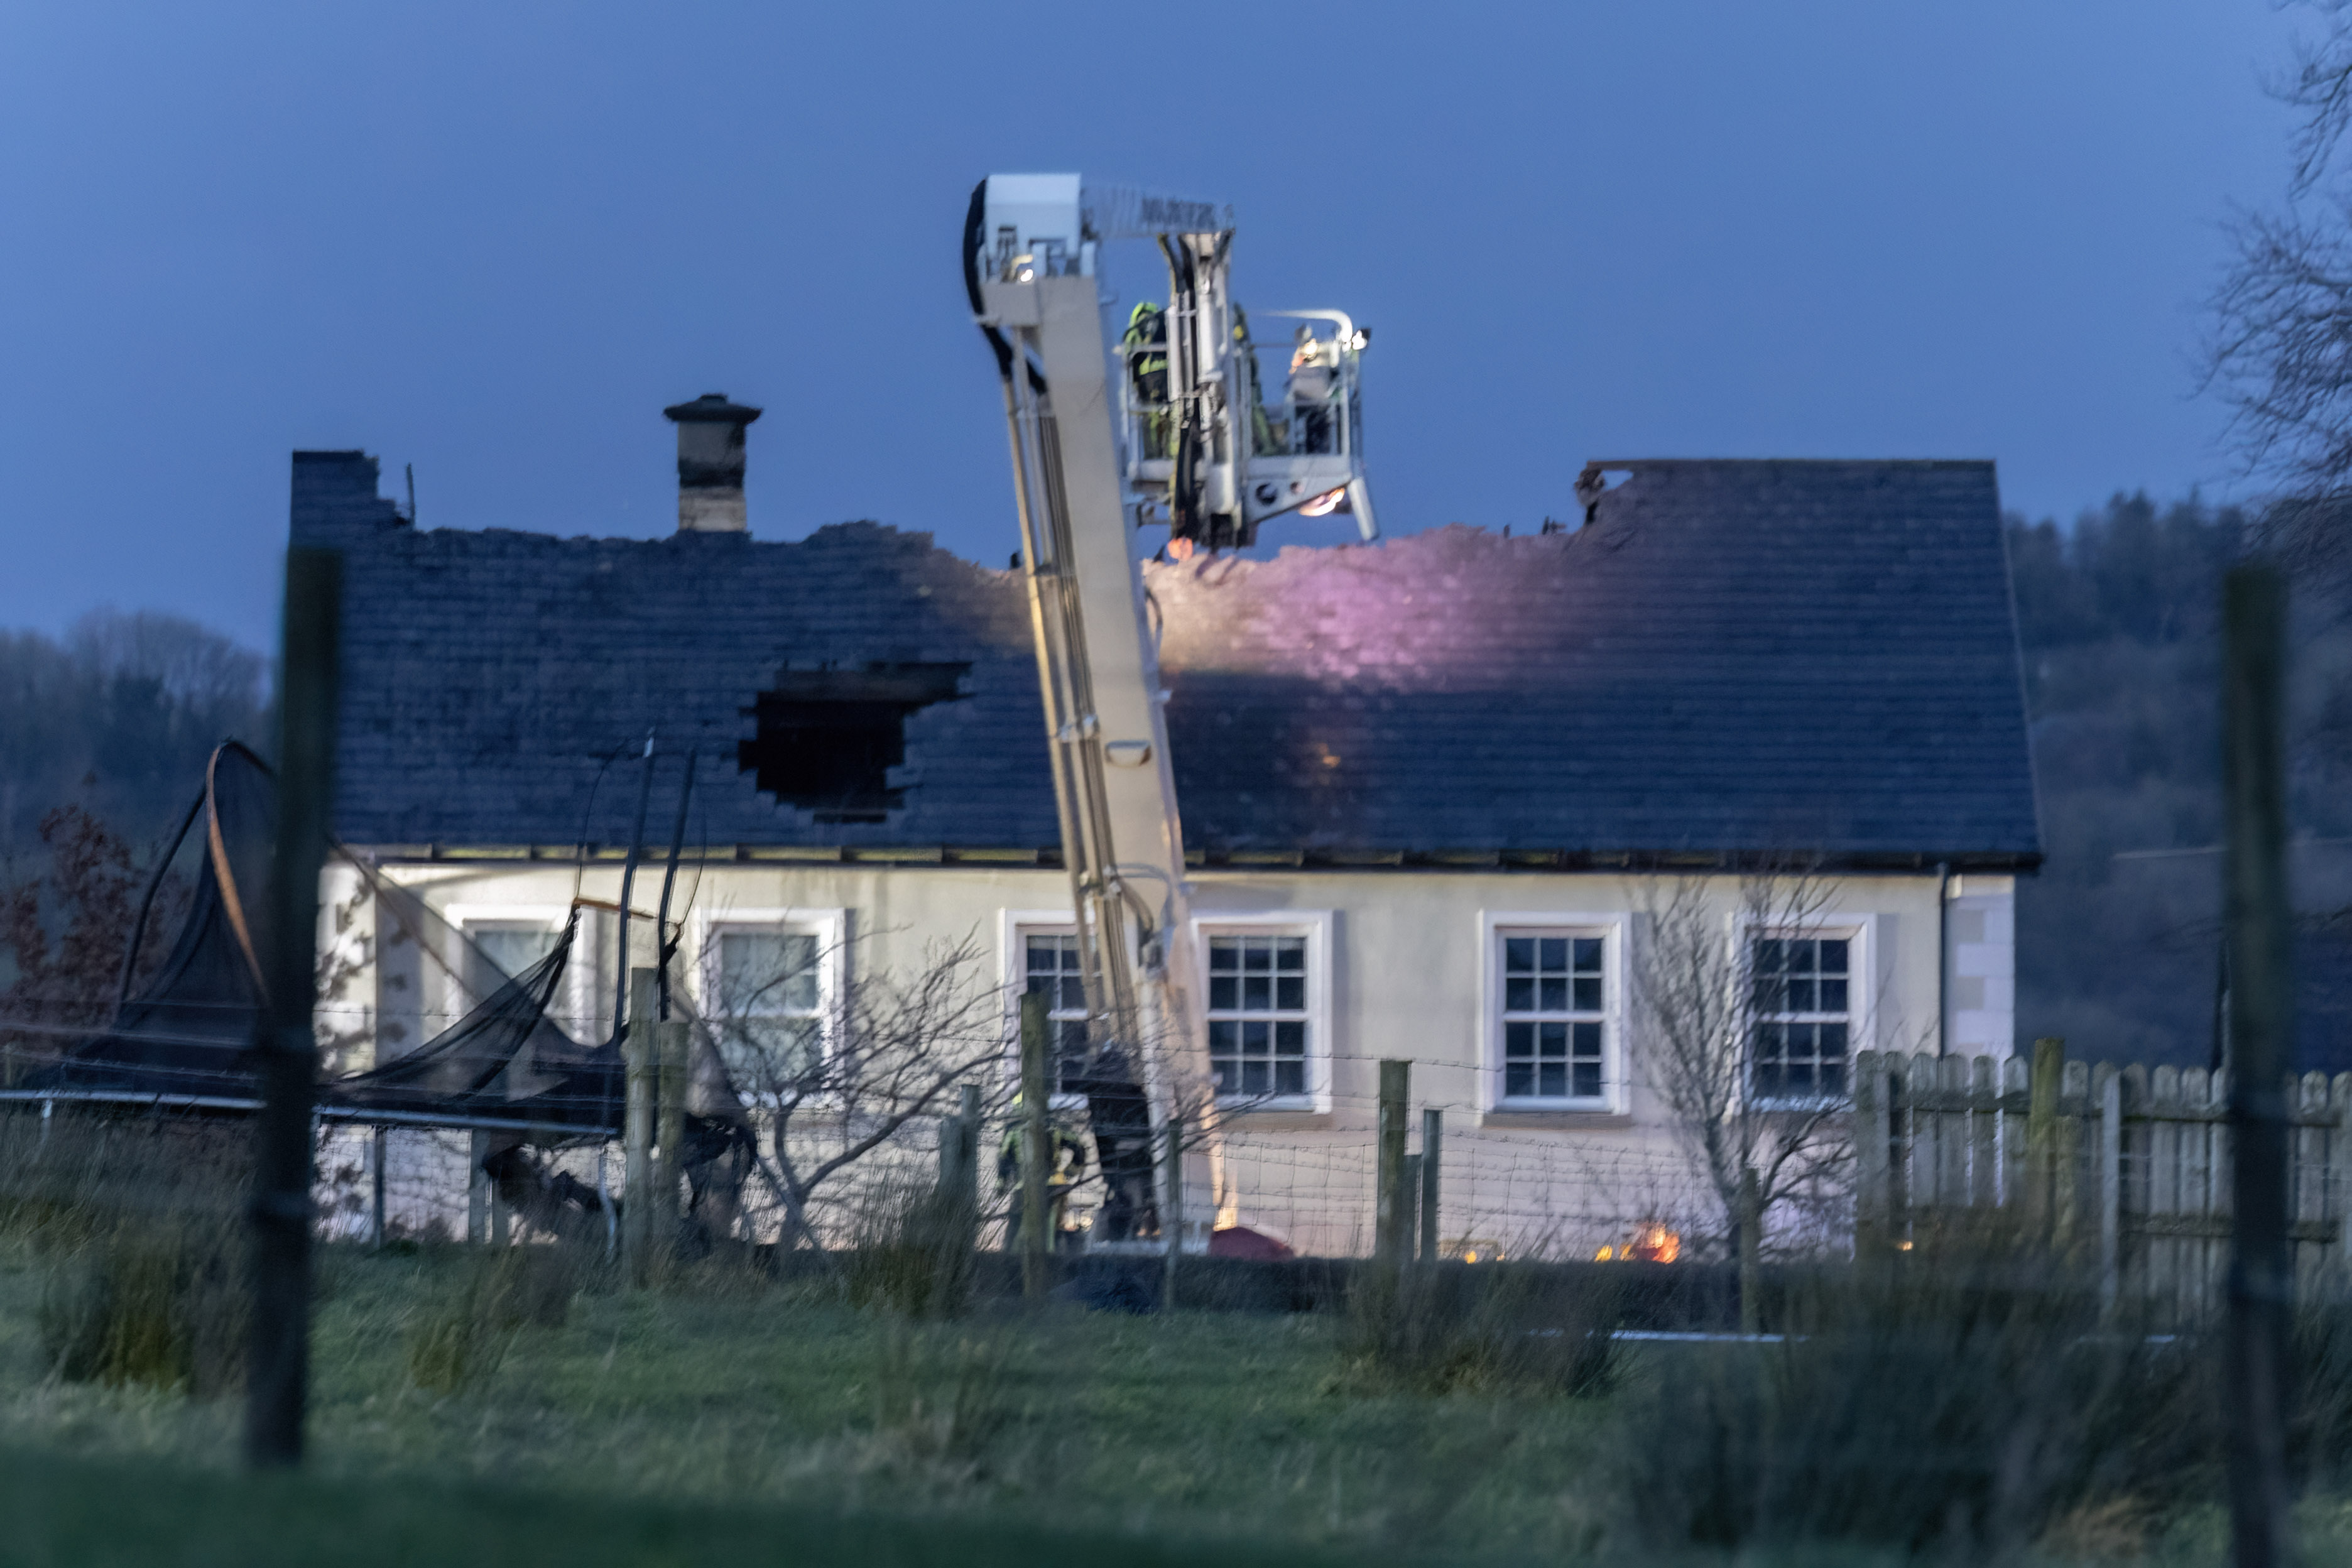 Häuser in Newtoncunningham, Donegal, fingen Feuer, nachdem sie vermutlich vom Blitz getroffen worden waren